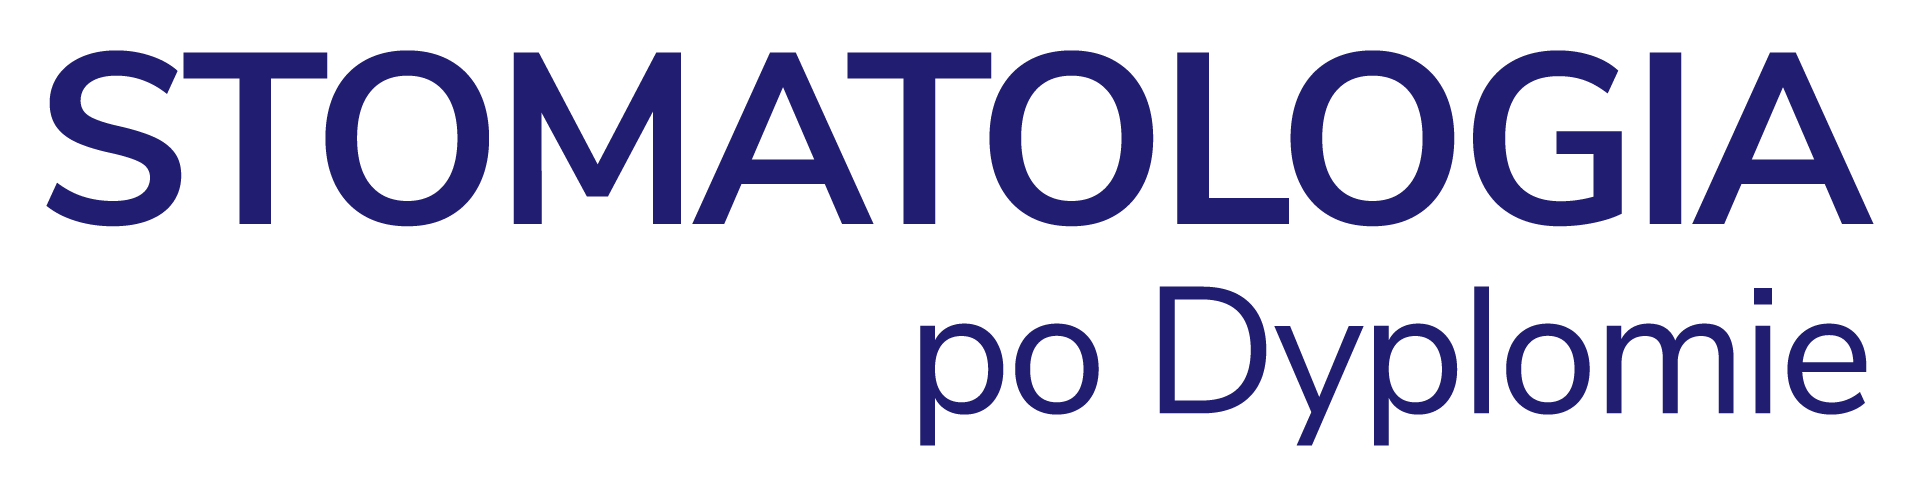 Spd logo